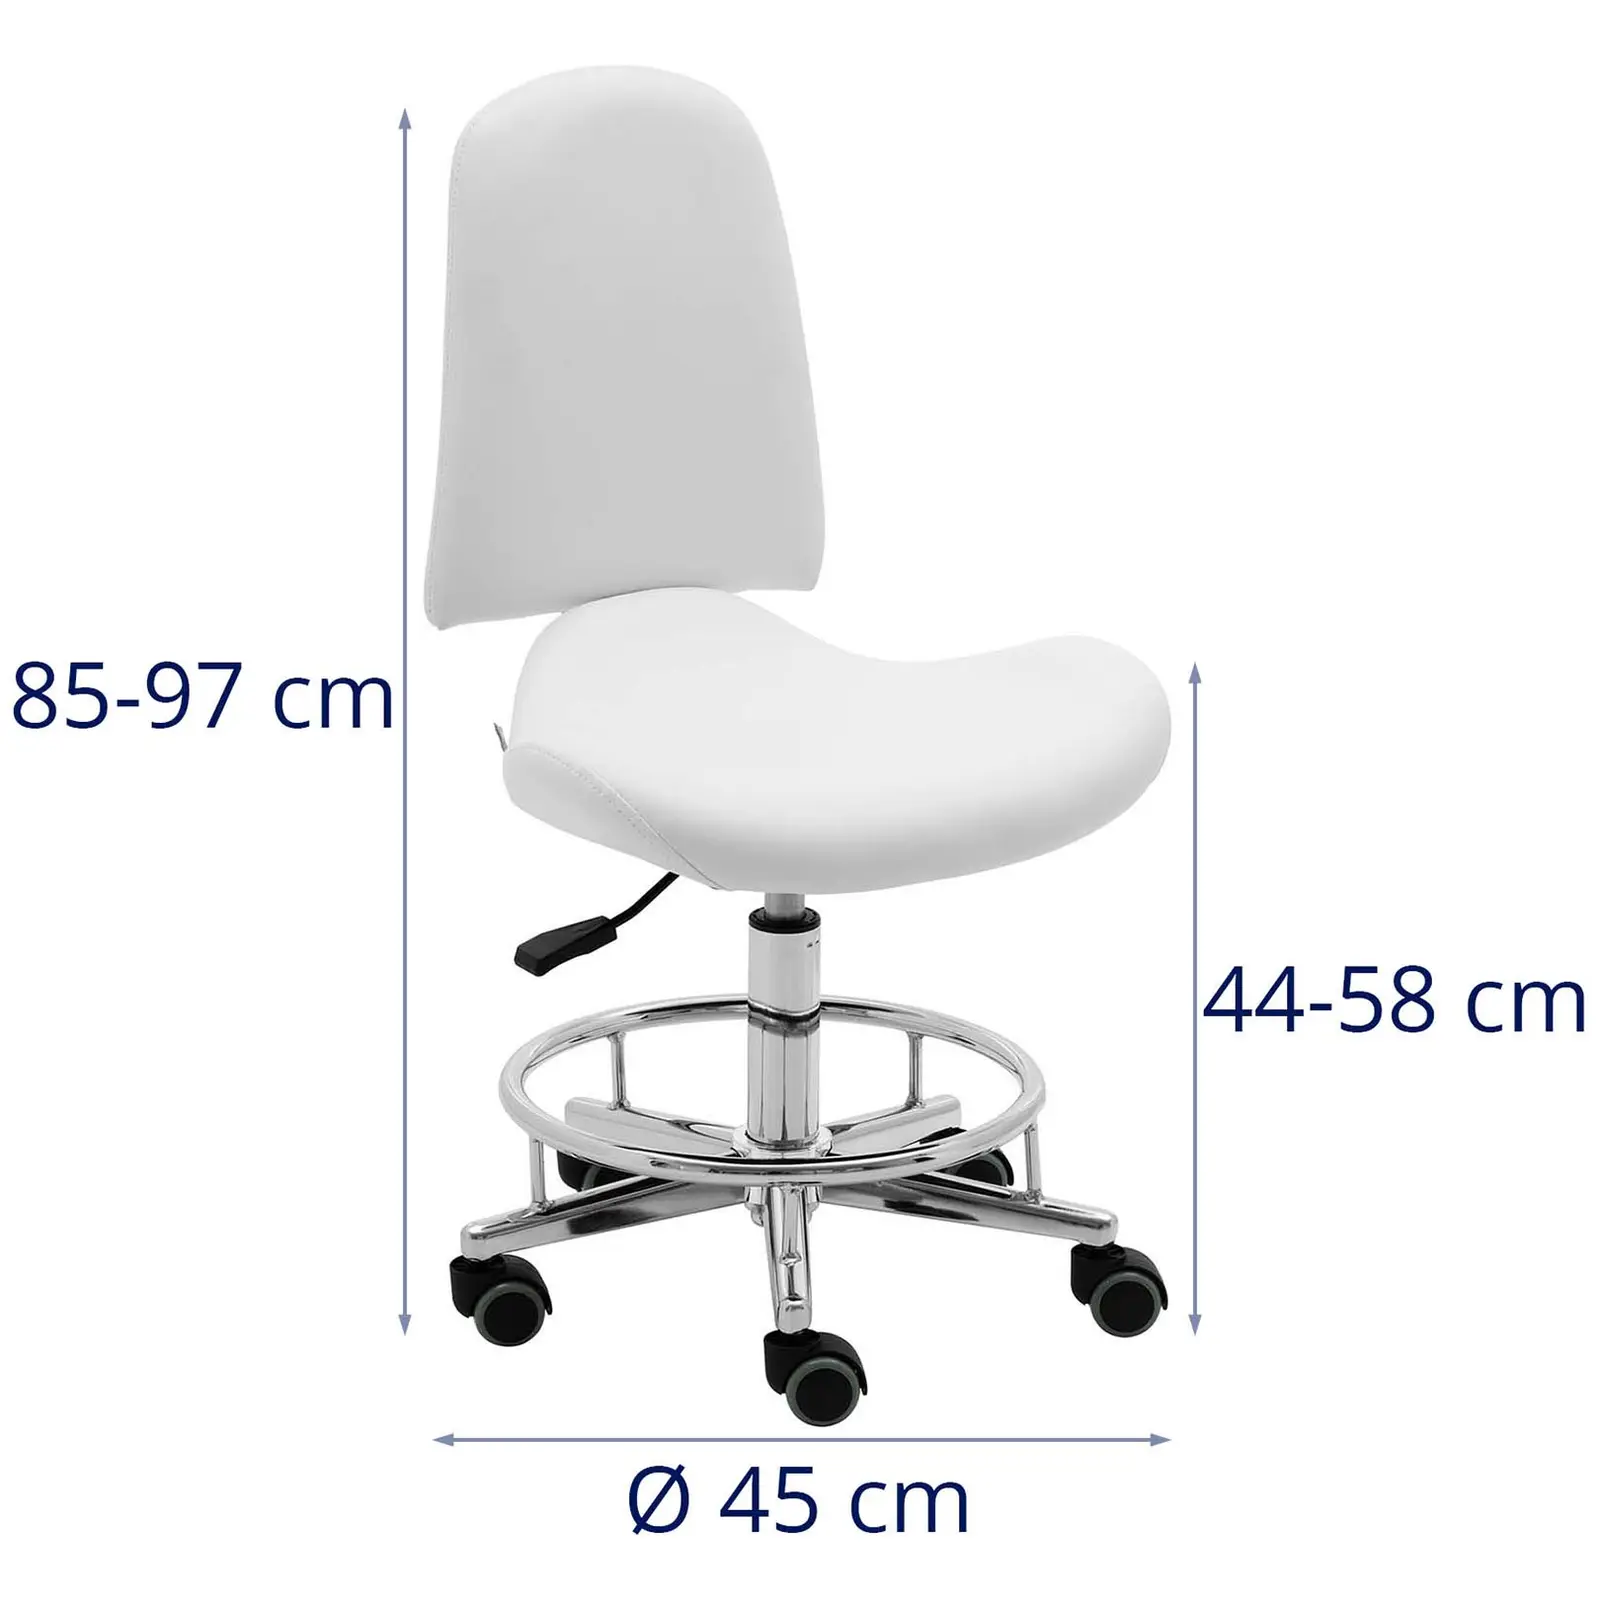 Arbejdsstol med hjul - 44 - 58 cm - 150 kg - hvid